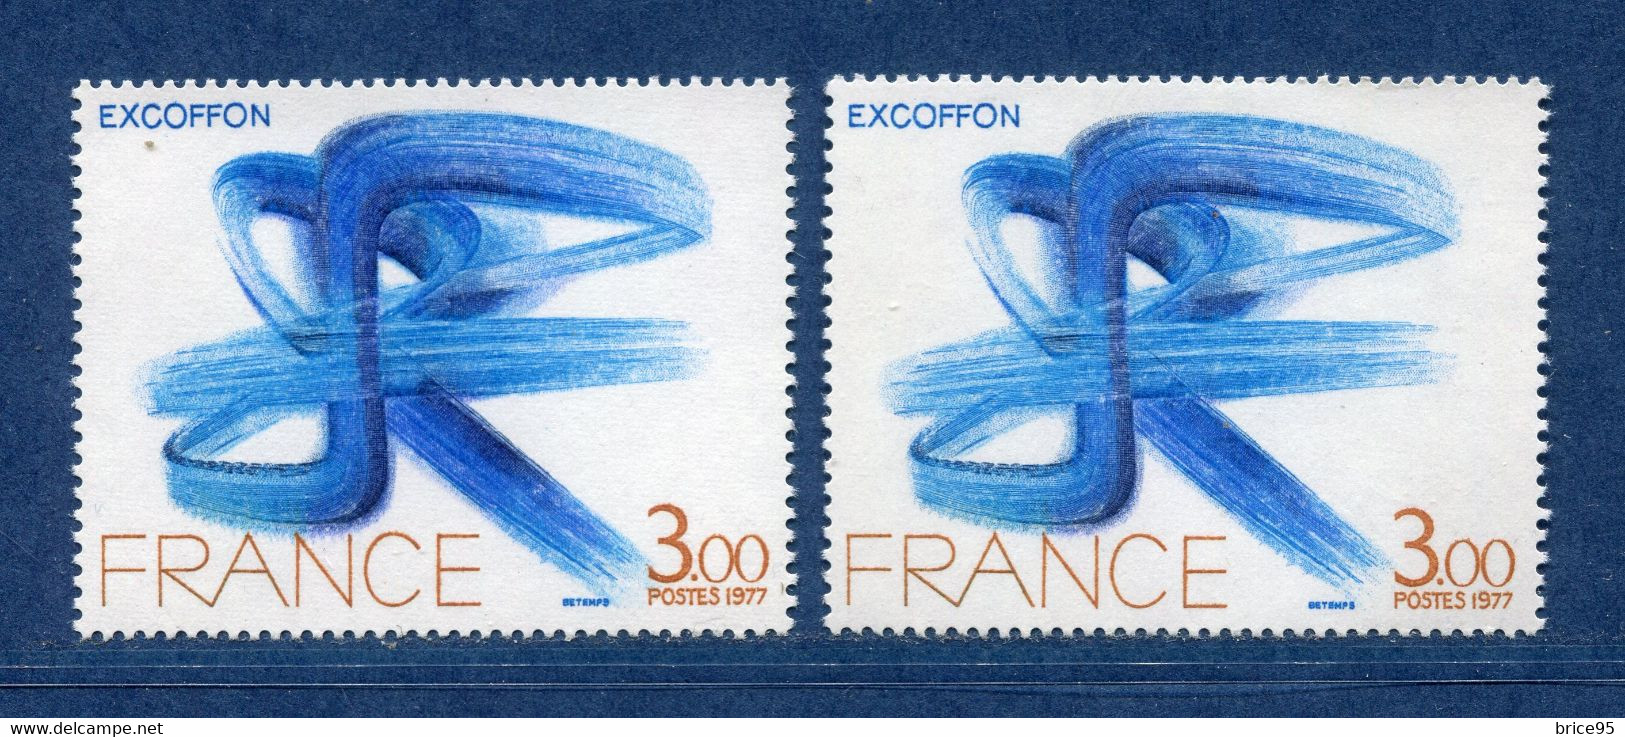 ⭐ France - Variété - YT N° 1951 - Couleurs - Pétouilles - Neuf Sans Charnière - 1977 ⭐ - Nuevos